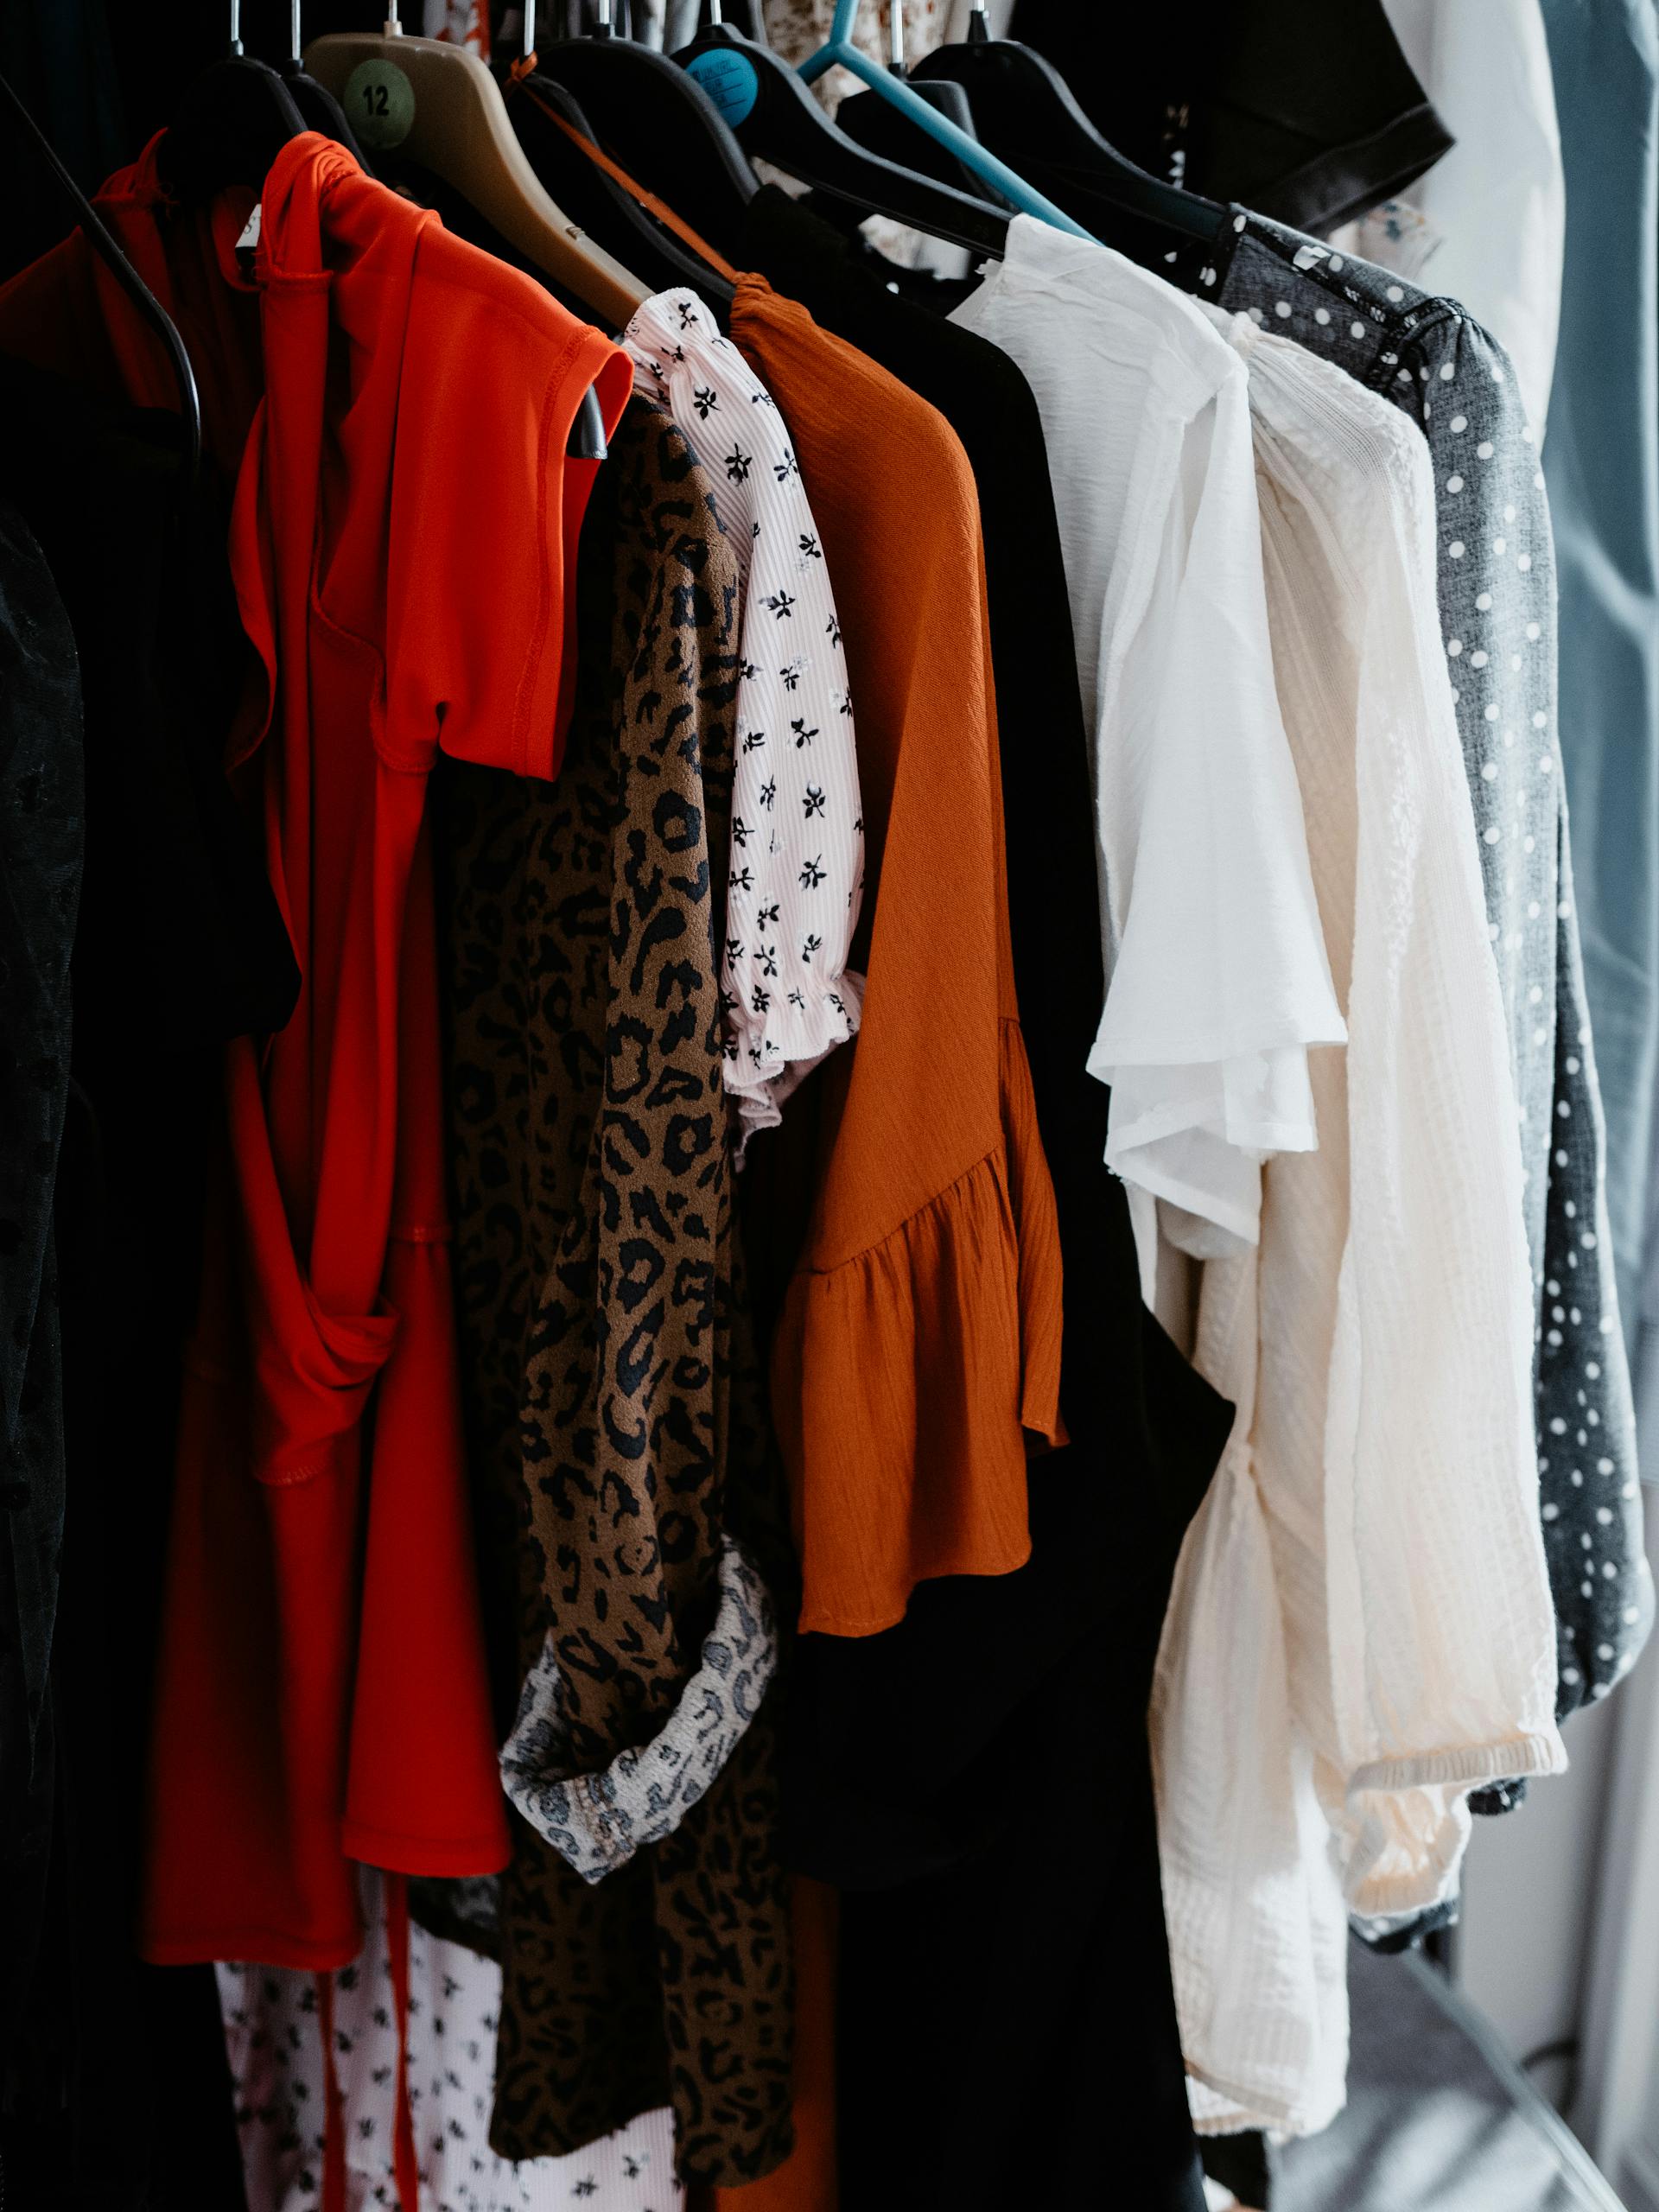 Vêtements sur une armoire | Source : Pexels